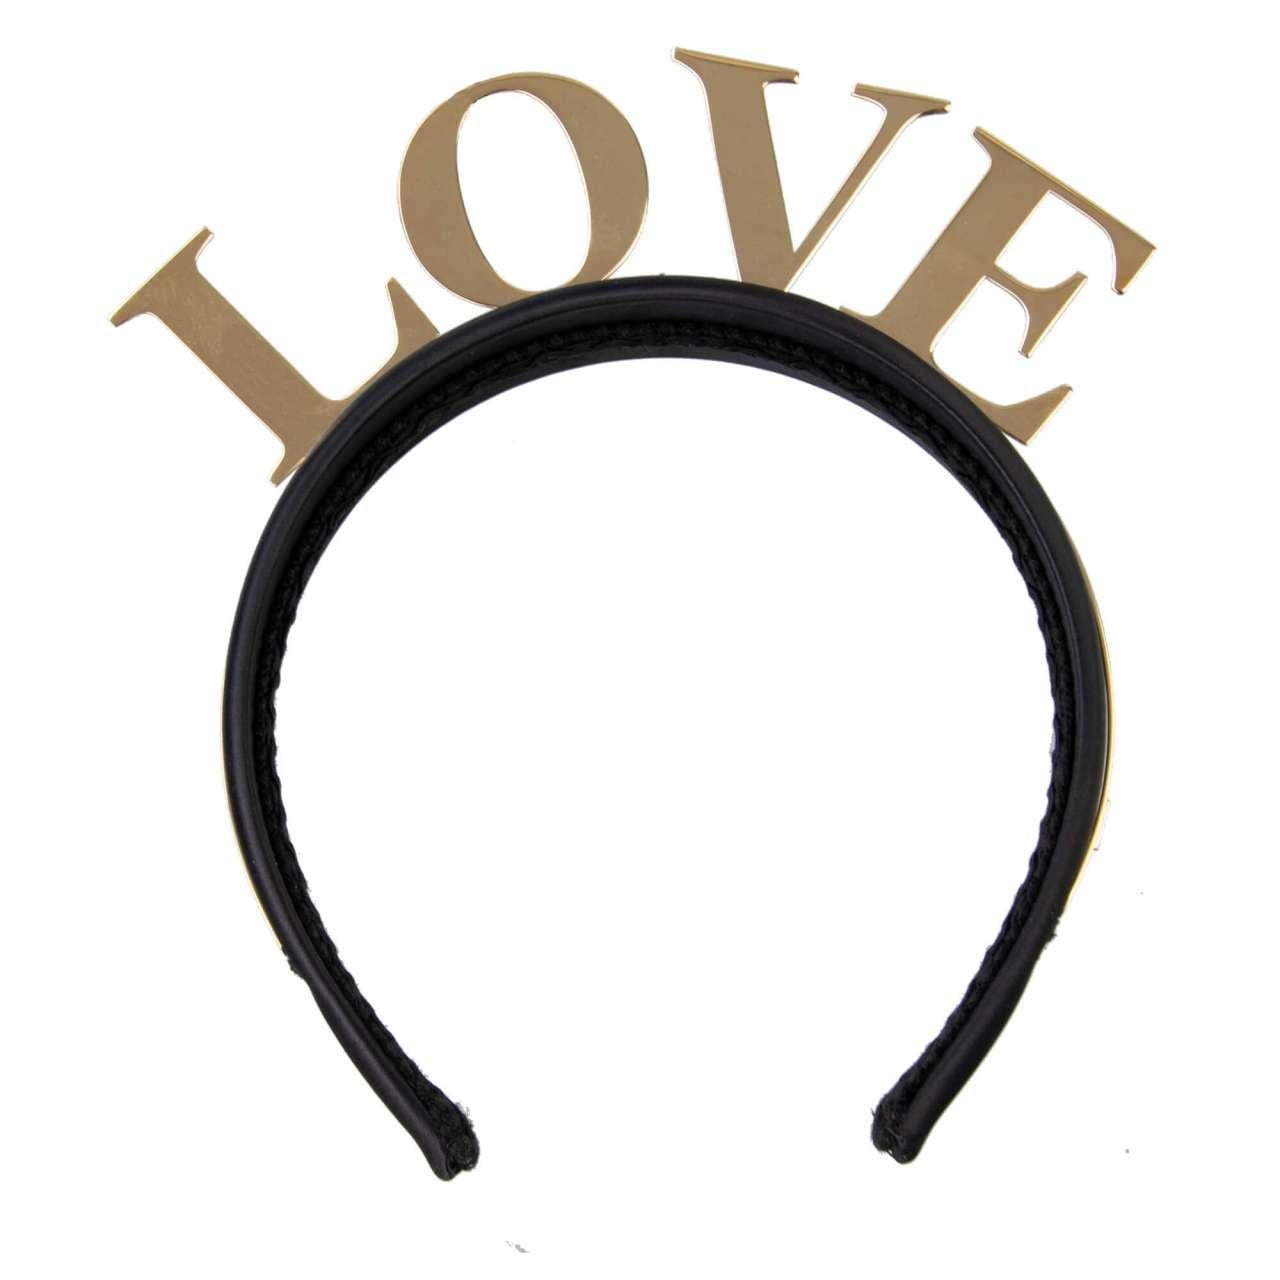 Dolce & Gabbana - Love Crown Headband Black Gold For Sale 1